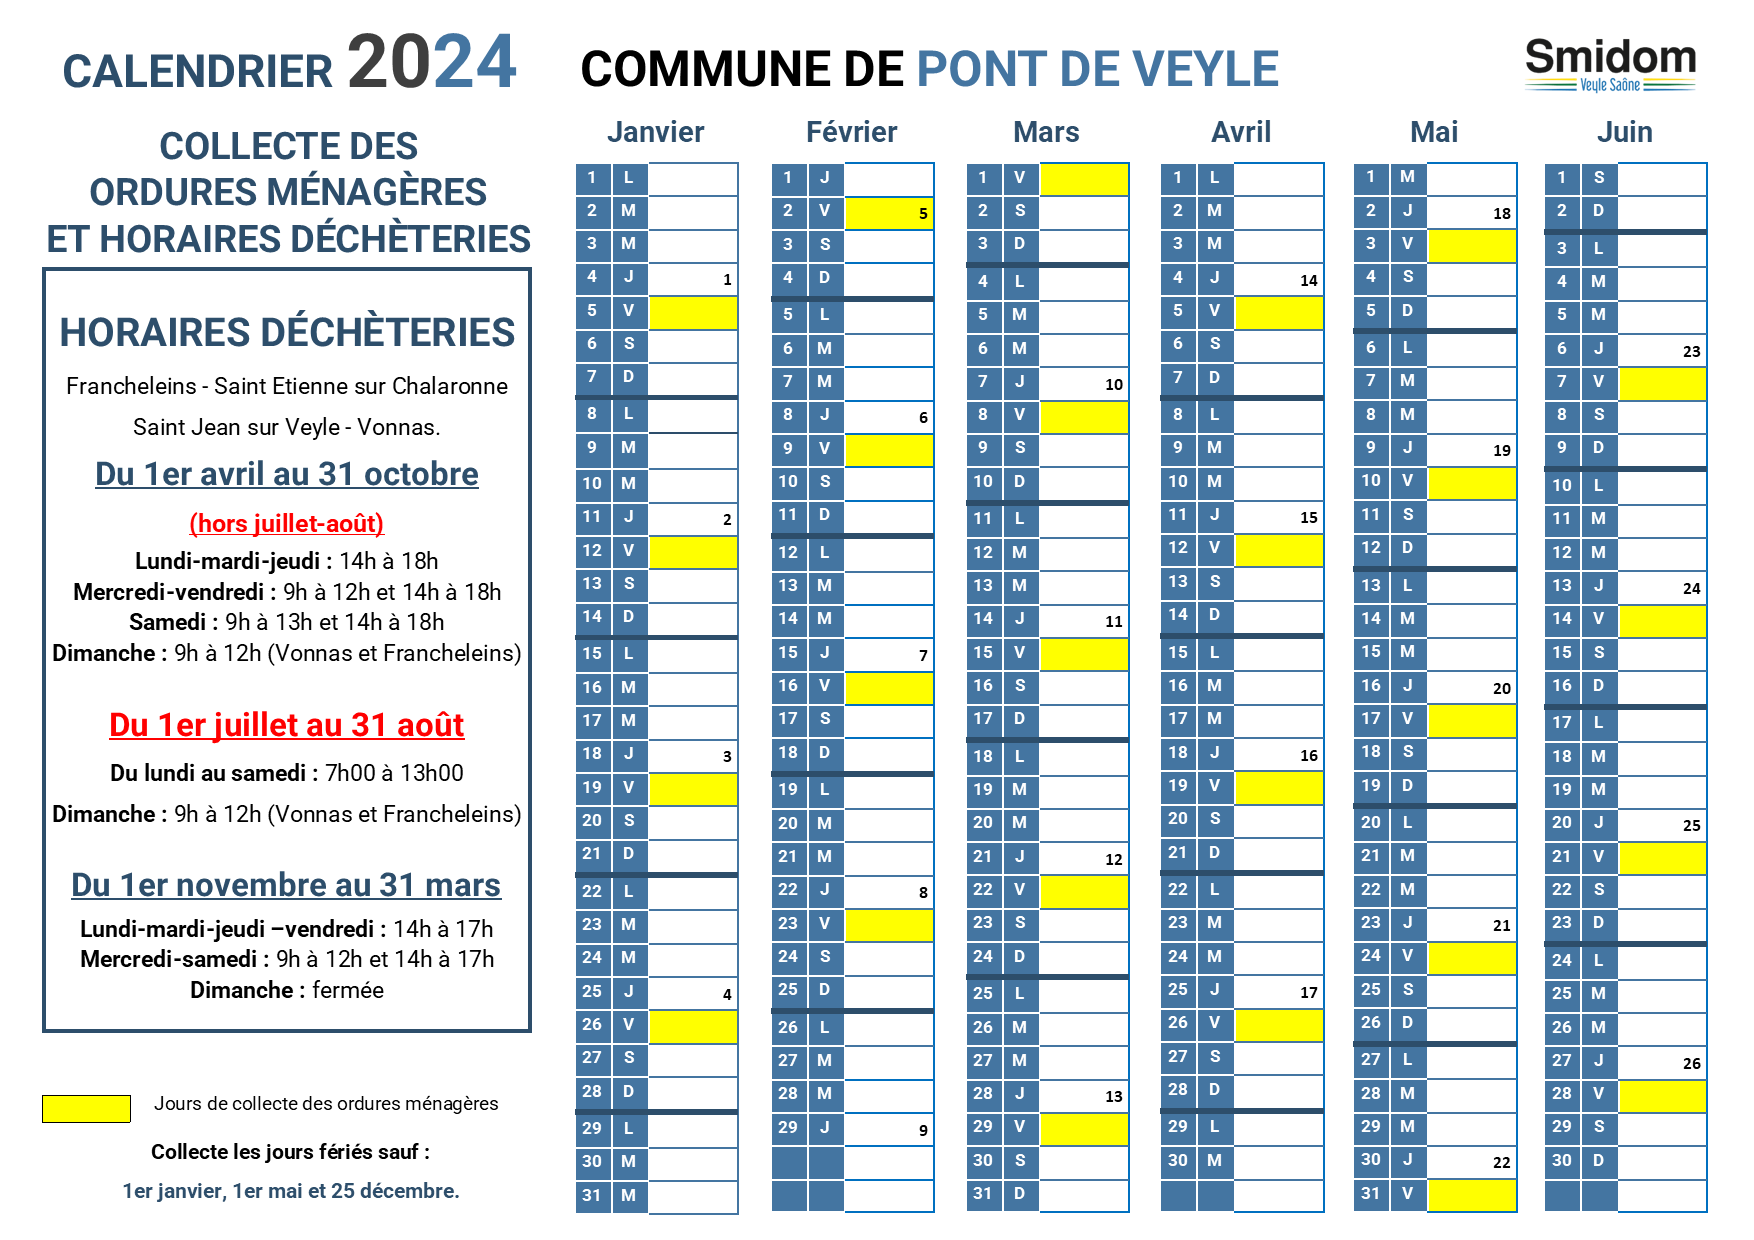 PONT DE VEYLE - Calendrier 2024.png